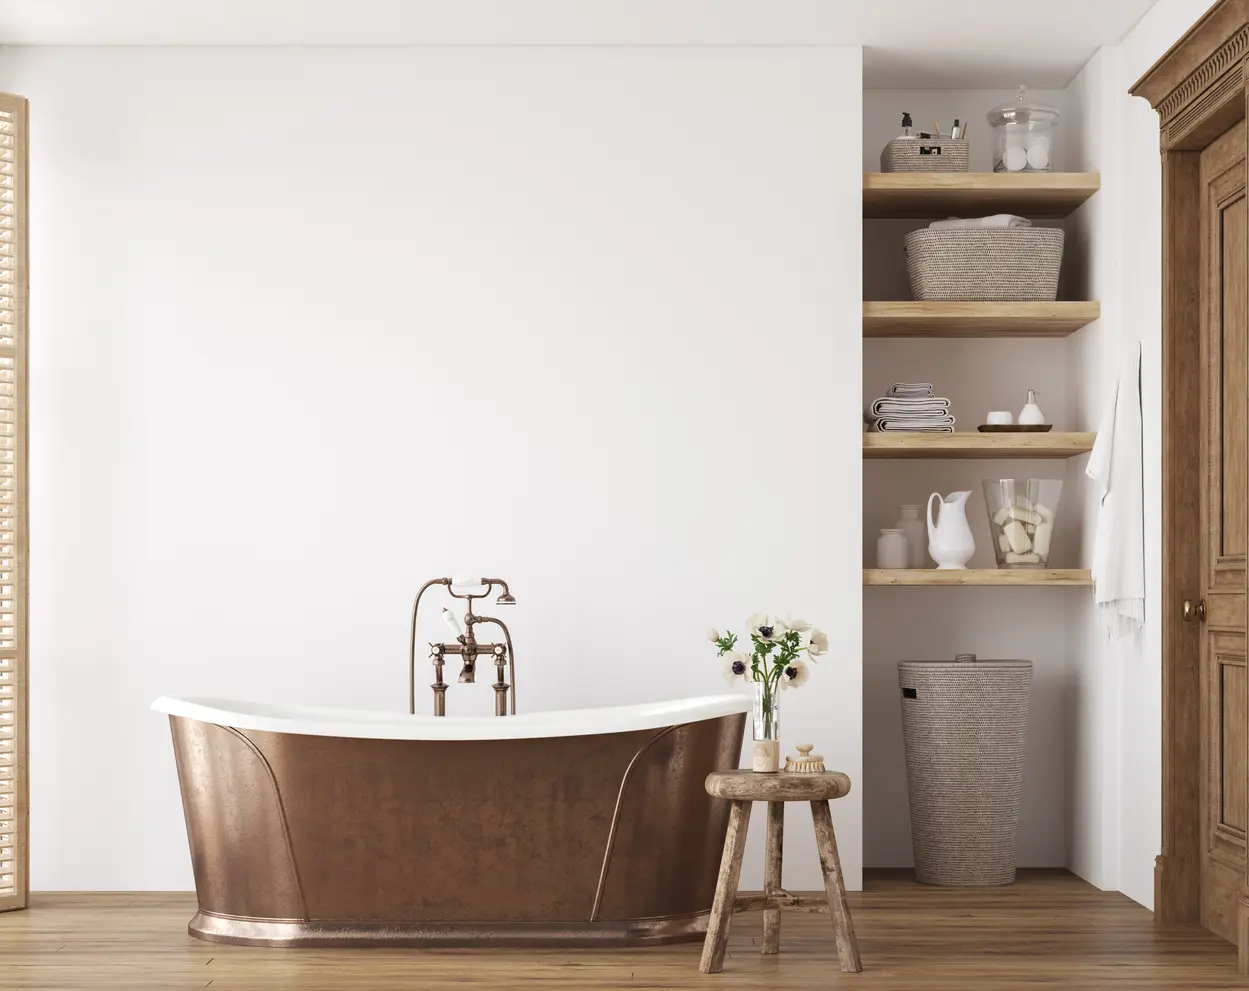 Łazienka w kolorze białym z wanną rustykalną, styl rustykalny. Element charakterystyczny: wanna rustykalna